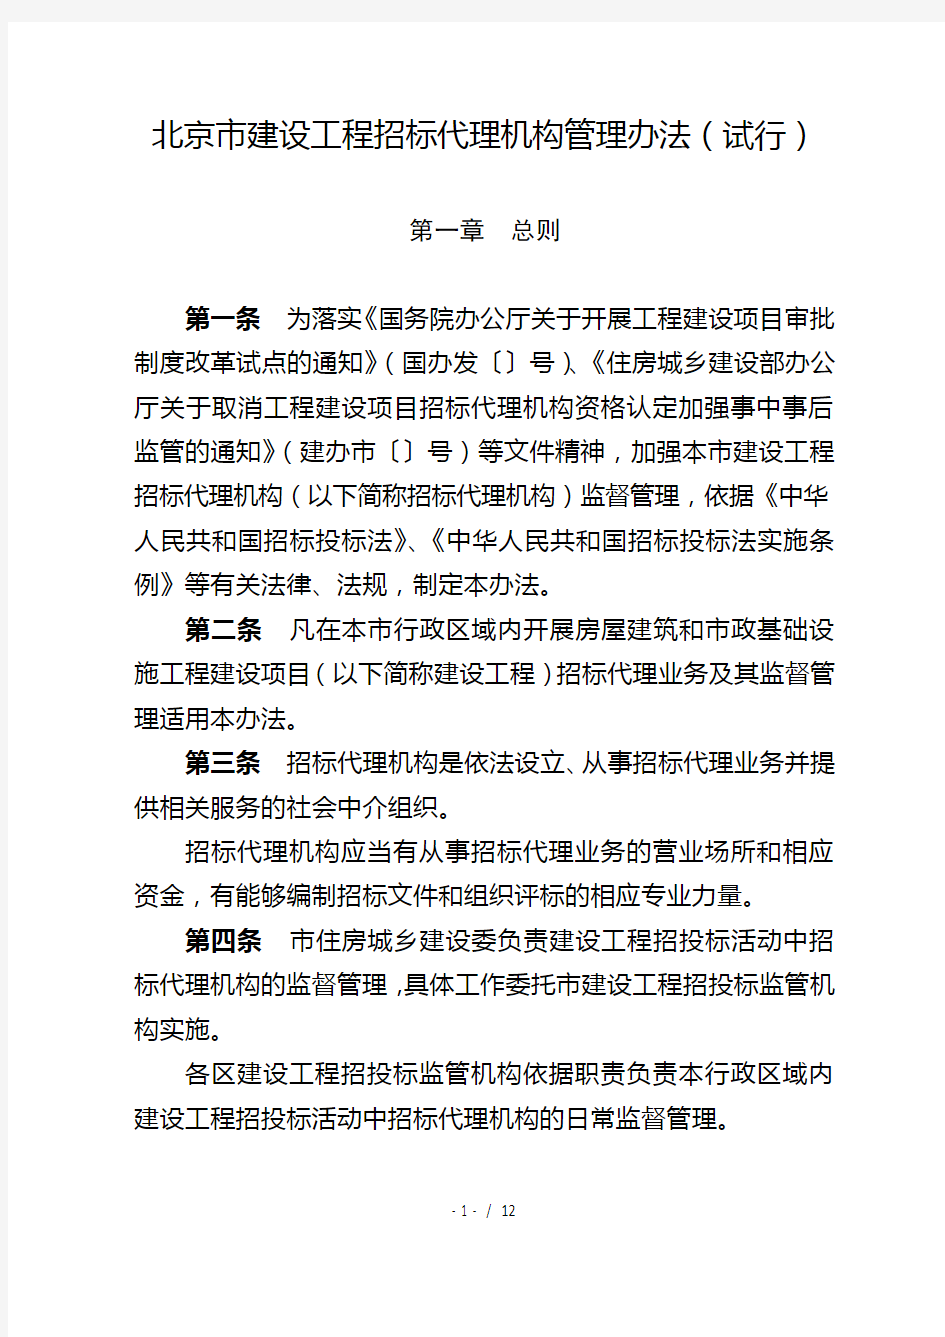 北京市建设工程招标代理机构管理办法(试行)